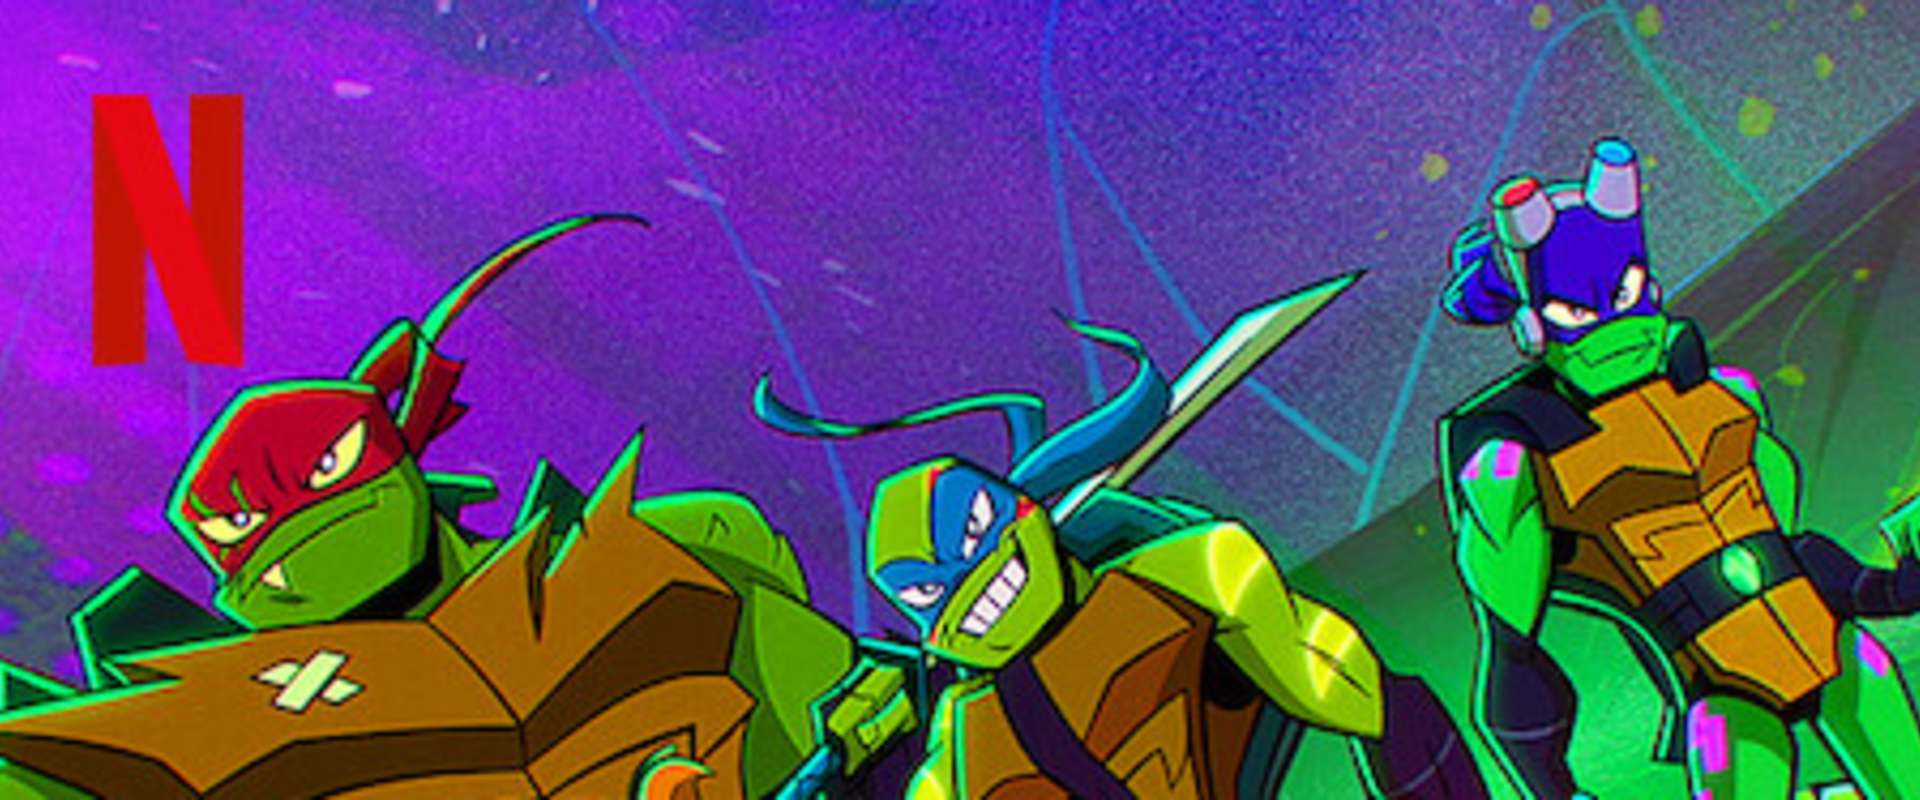 Rise of the Teenage Mutant Ninja Turtles: The Movie background 2